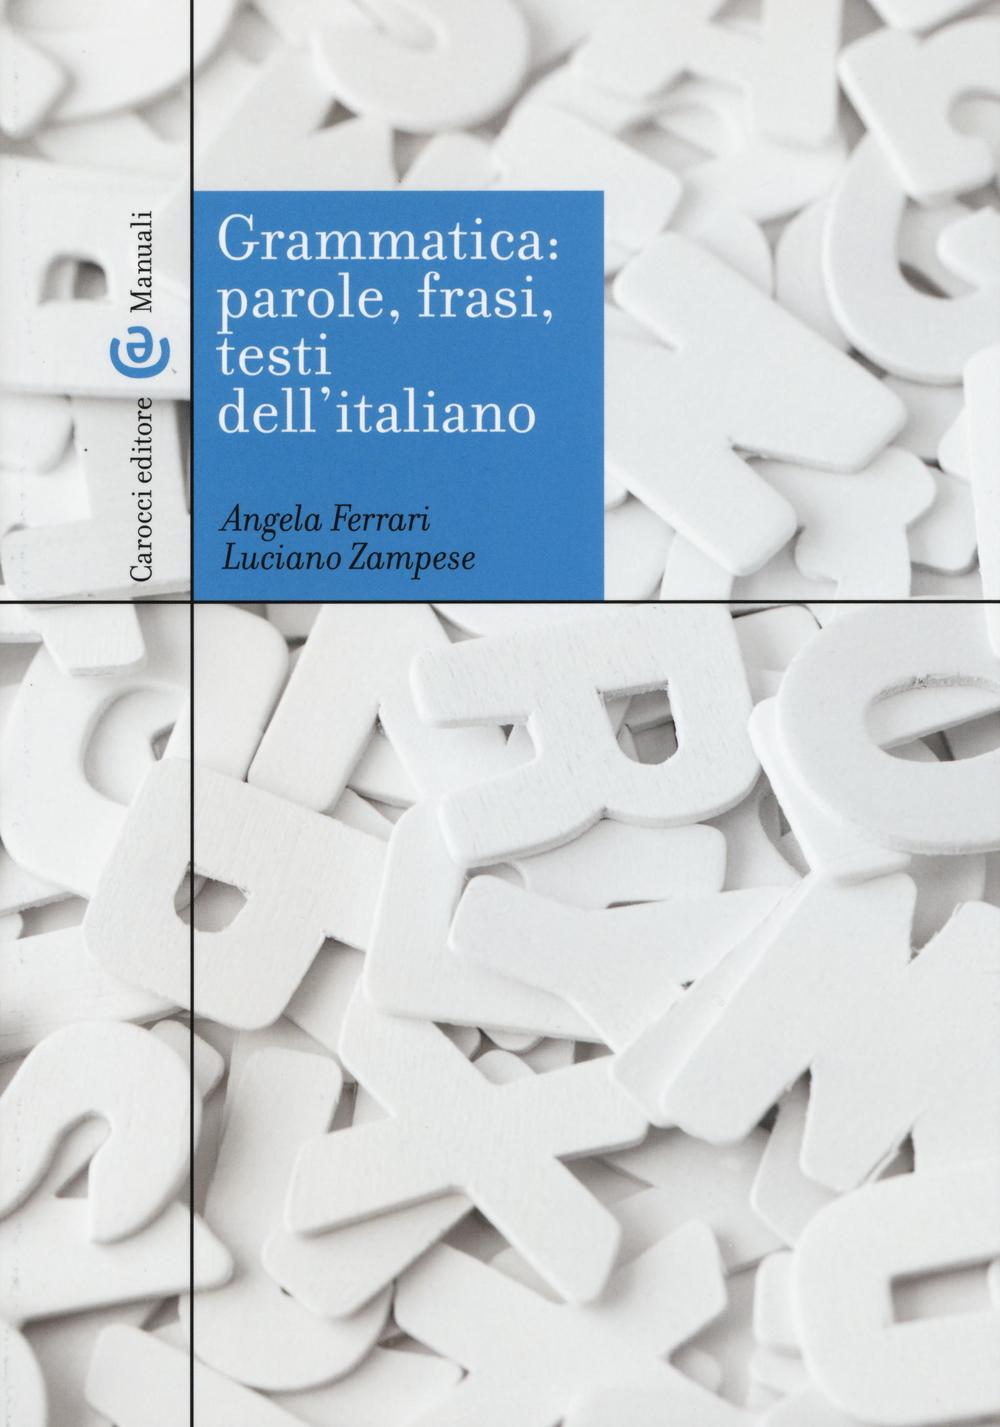 Book Grammatica: parole, frasi, testi dell'italiano Angela Ferrari